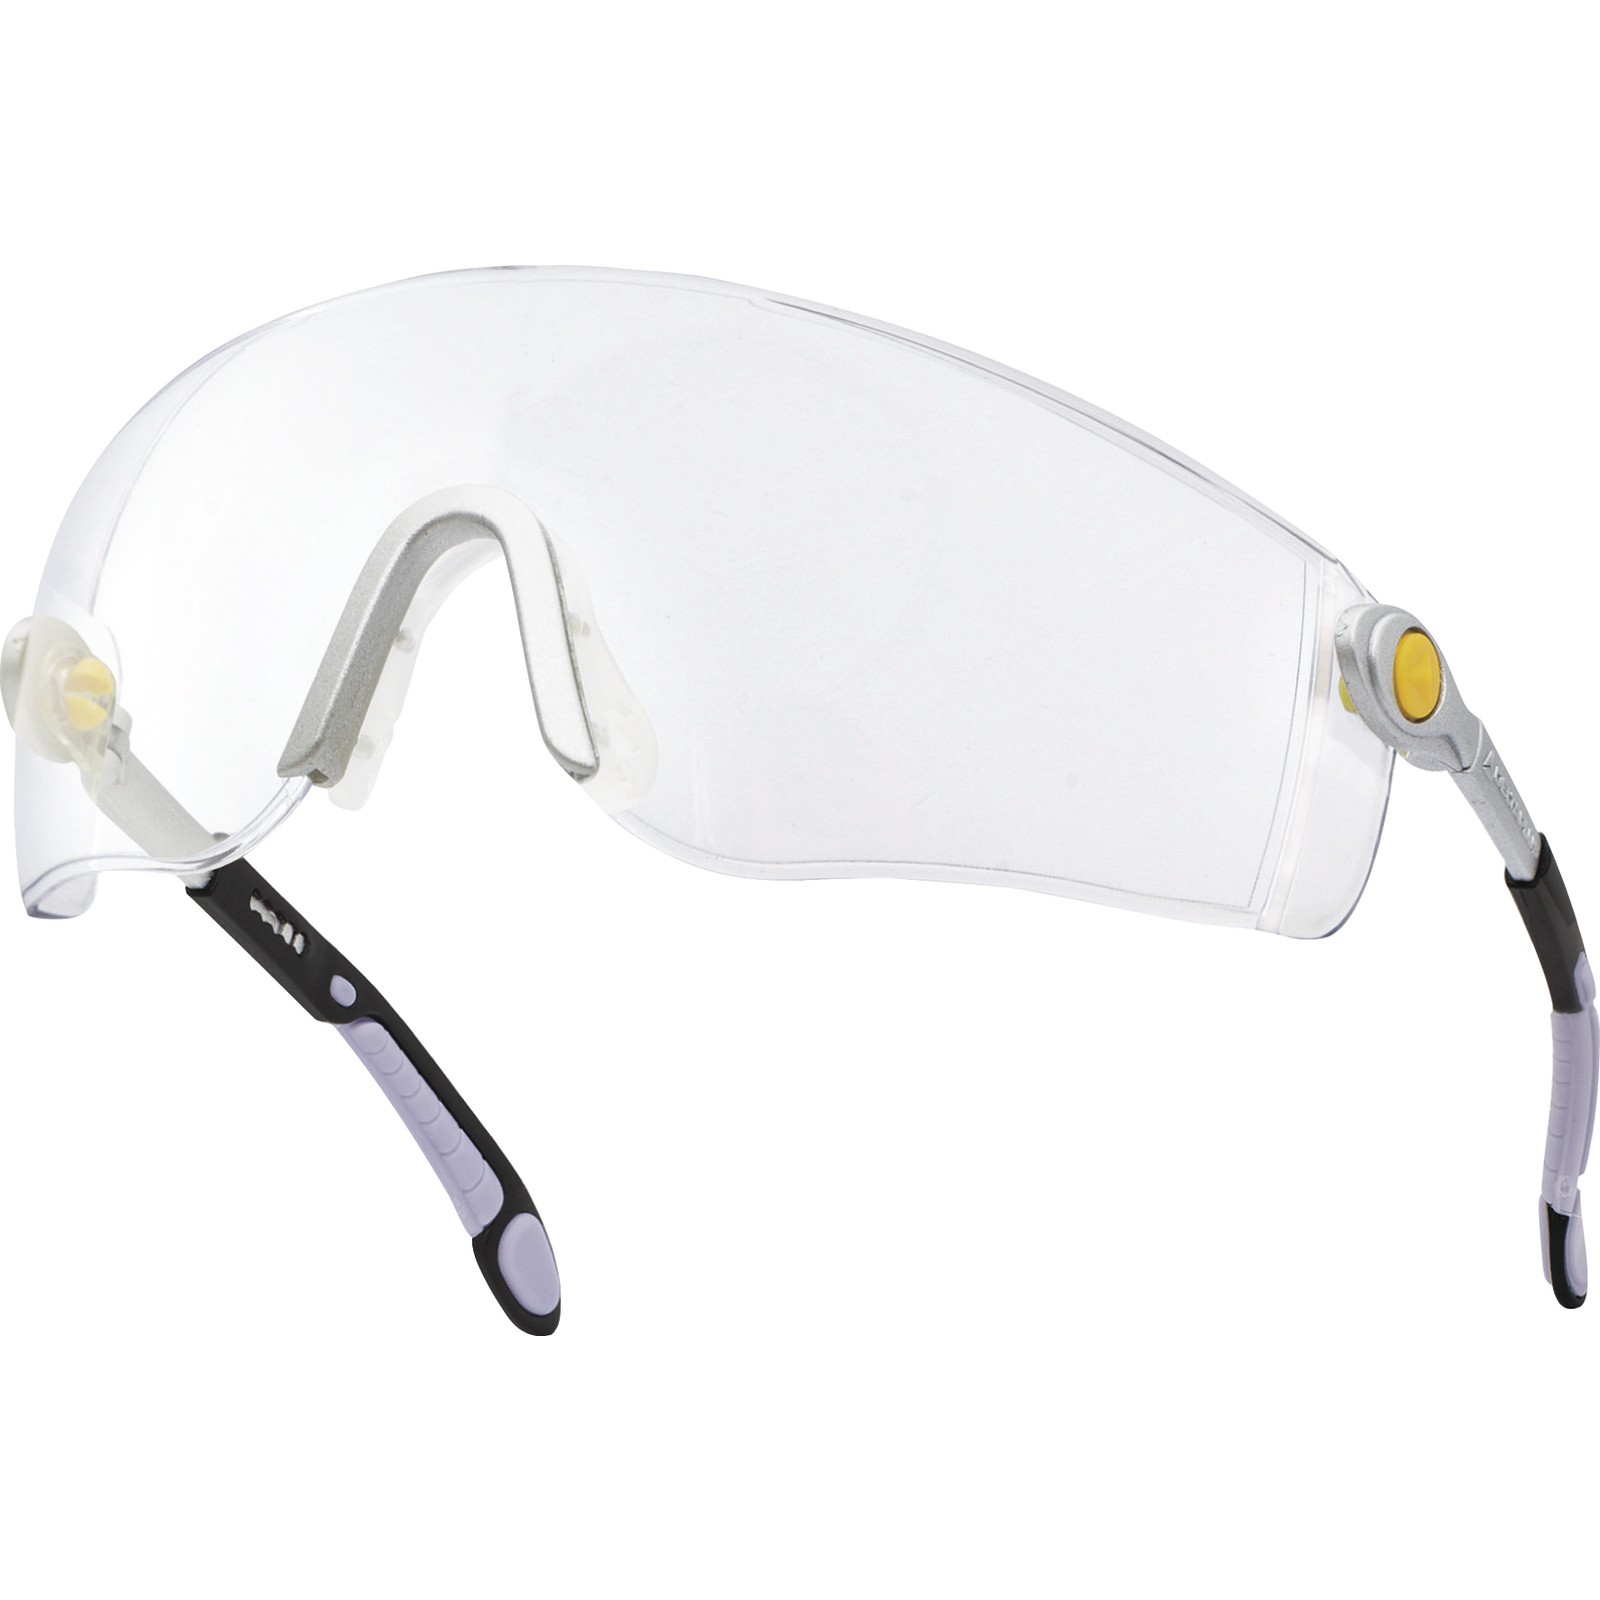 DeltaPlus Очки LIPARI2 CLEAR открытые защитные с боковой защитой очки защитные для мастера регулируемые дужки цвет желтый